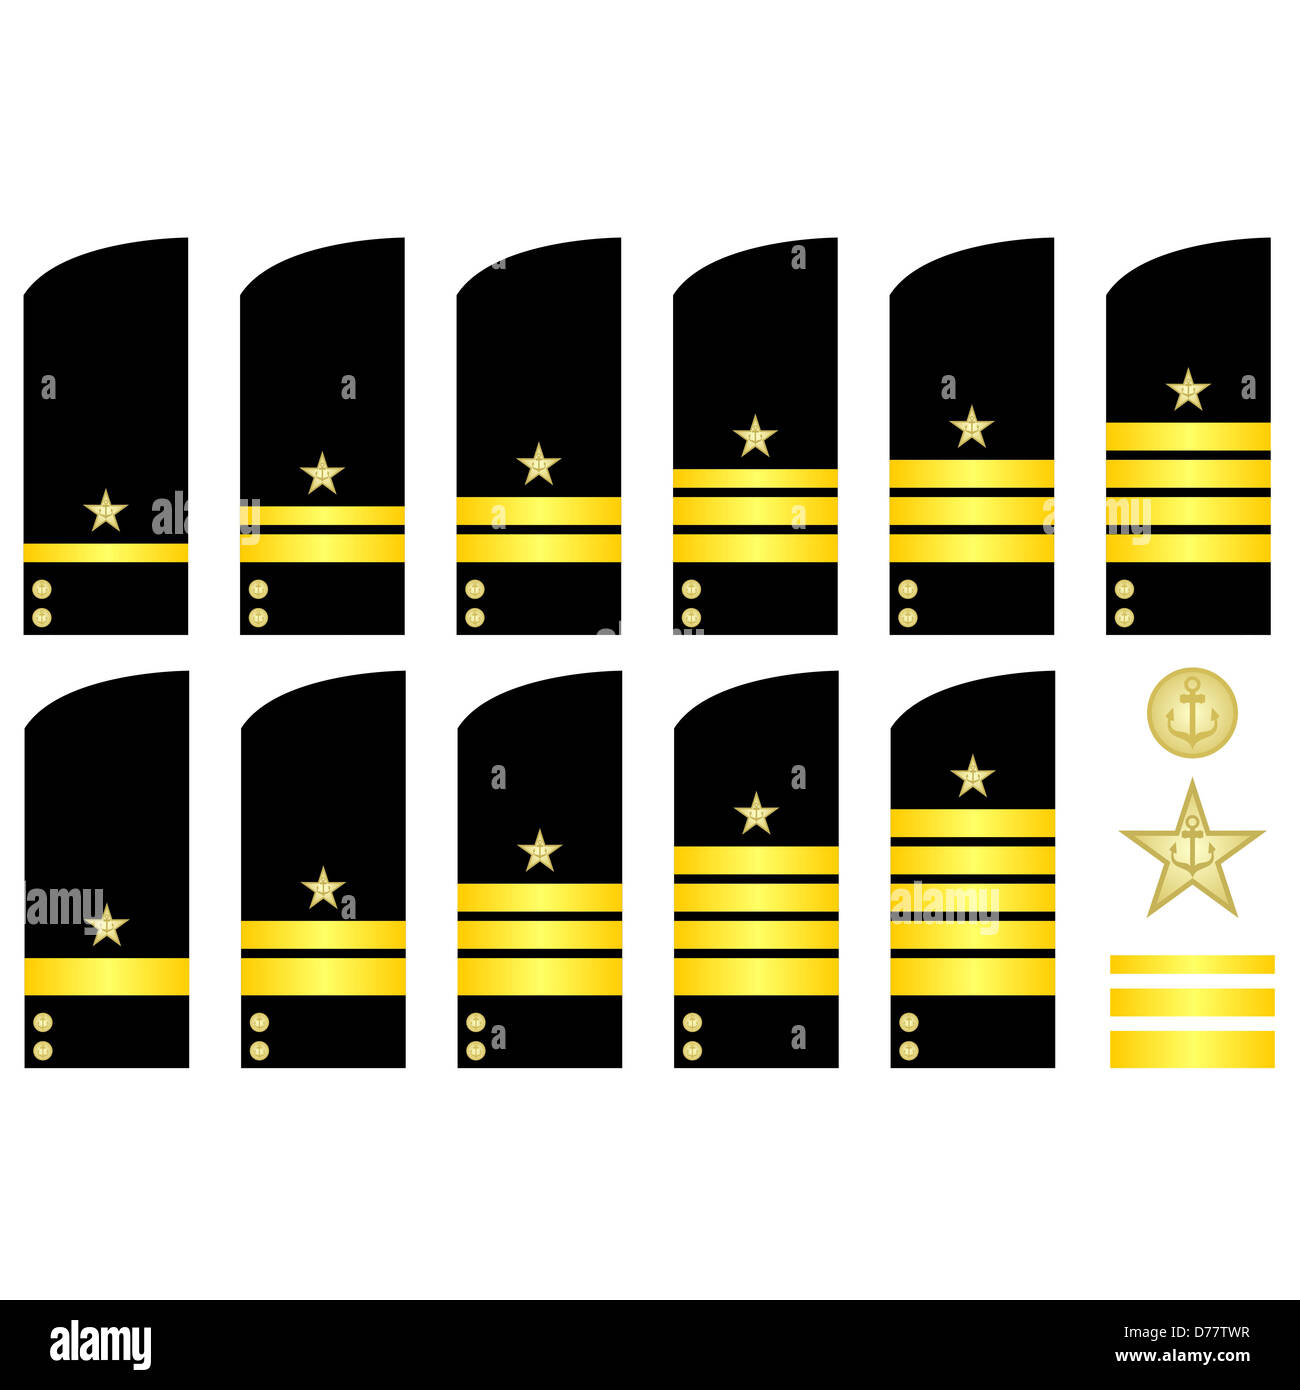 Militärische Ränge und Abzeichen der Welt. Die Abbildung auf einem weißen Hintergrund. Stockfoto